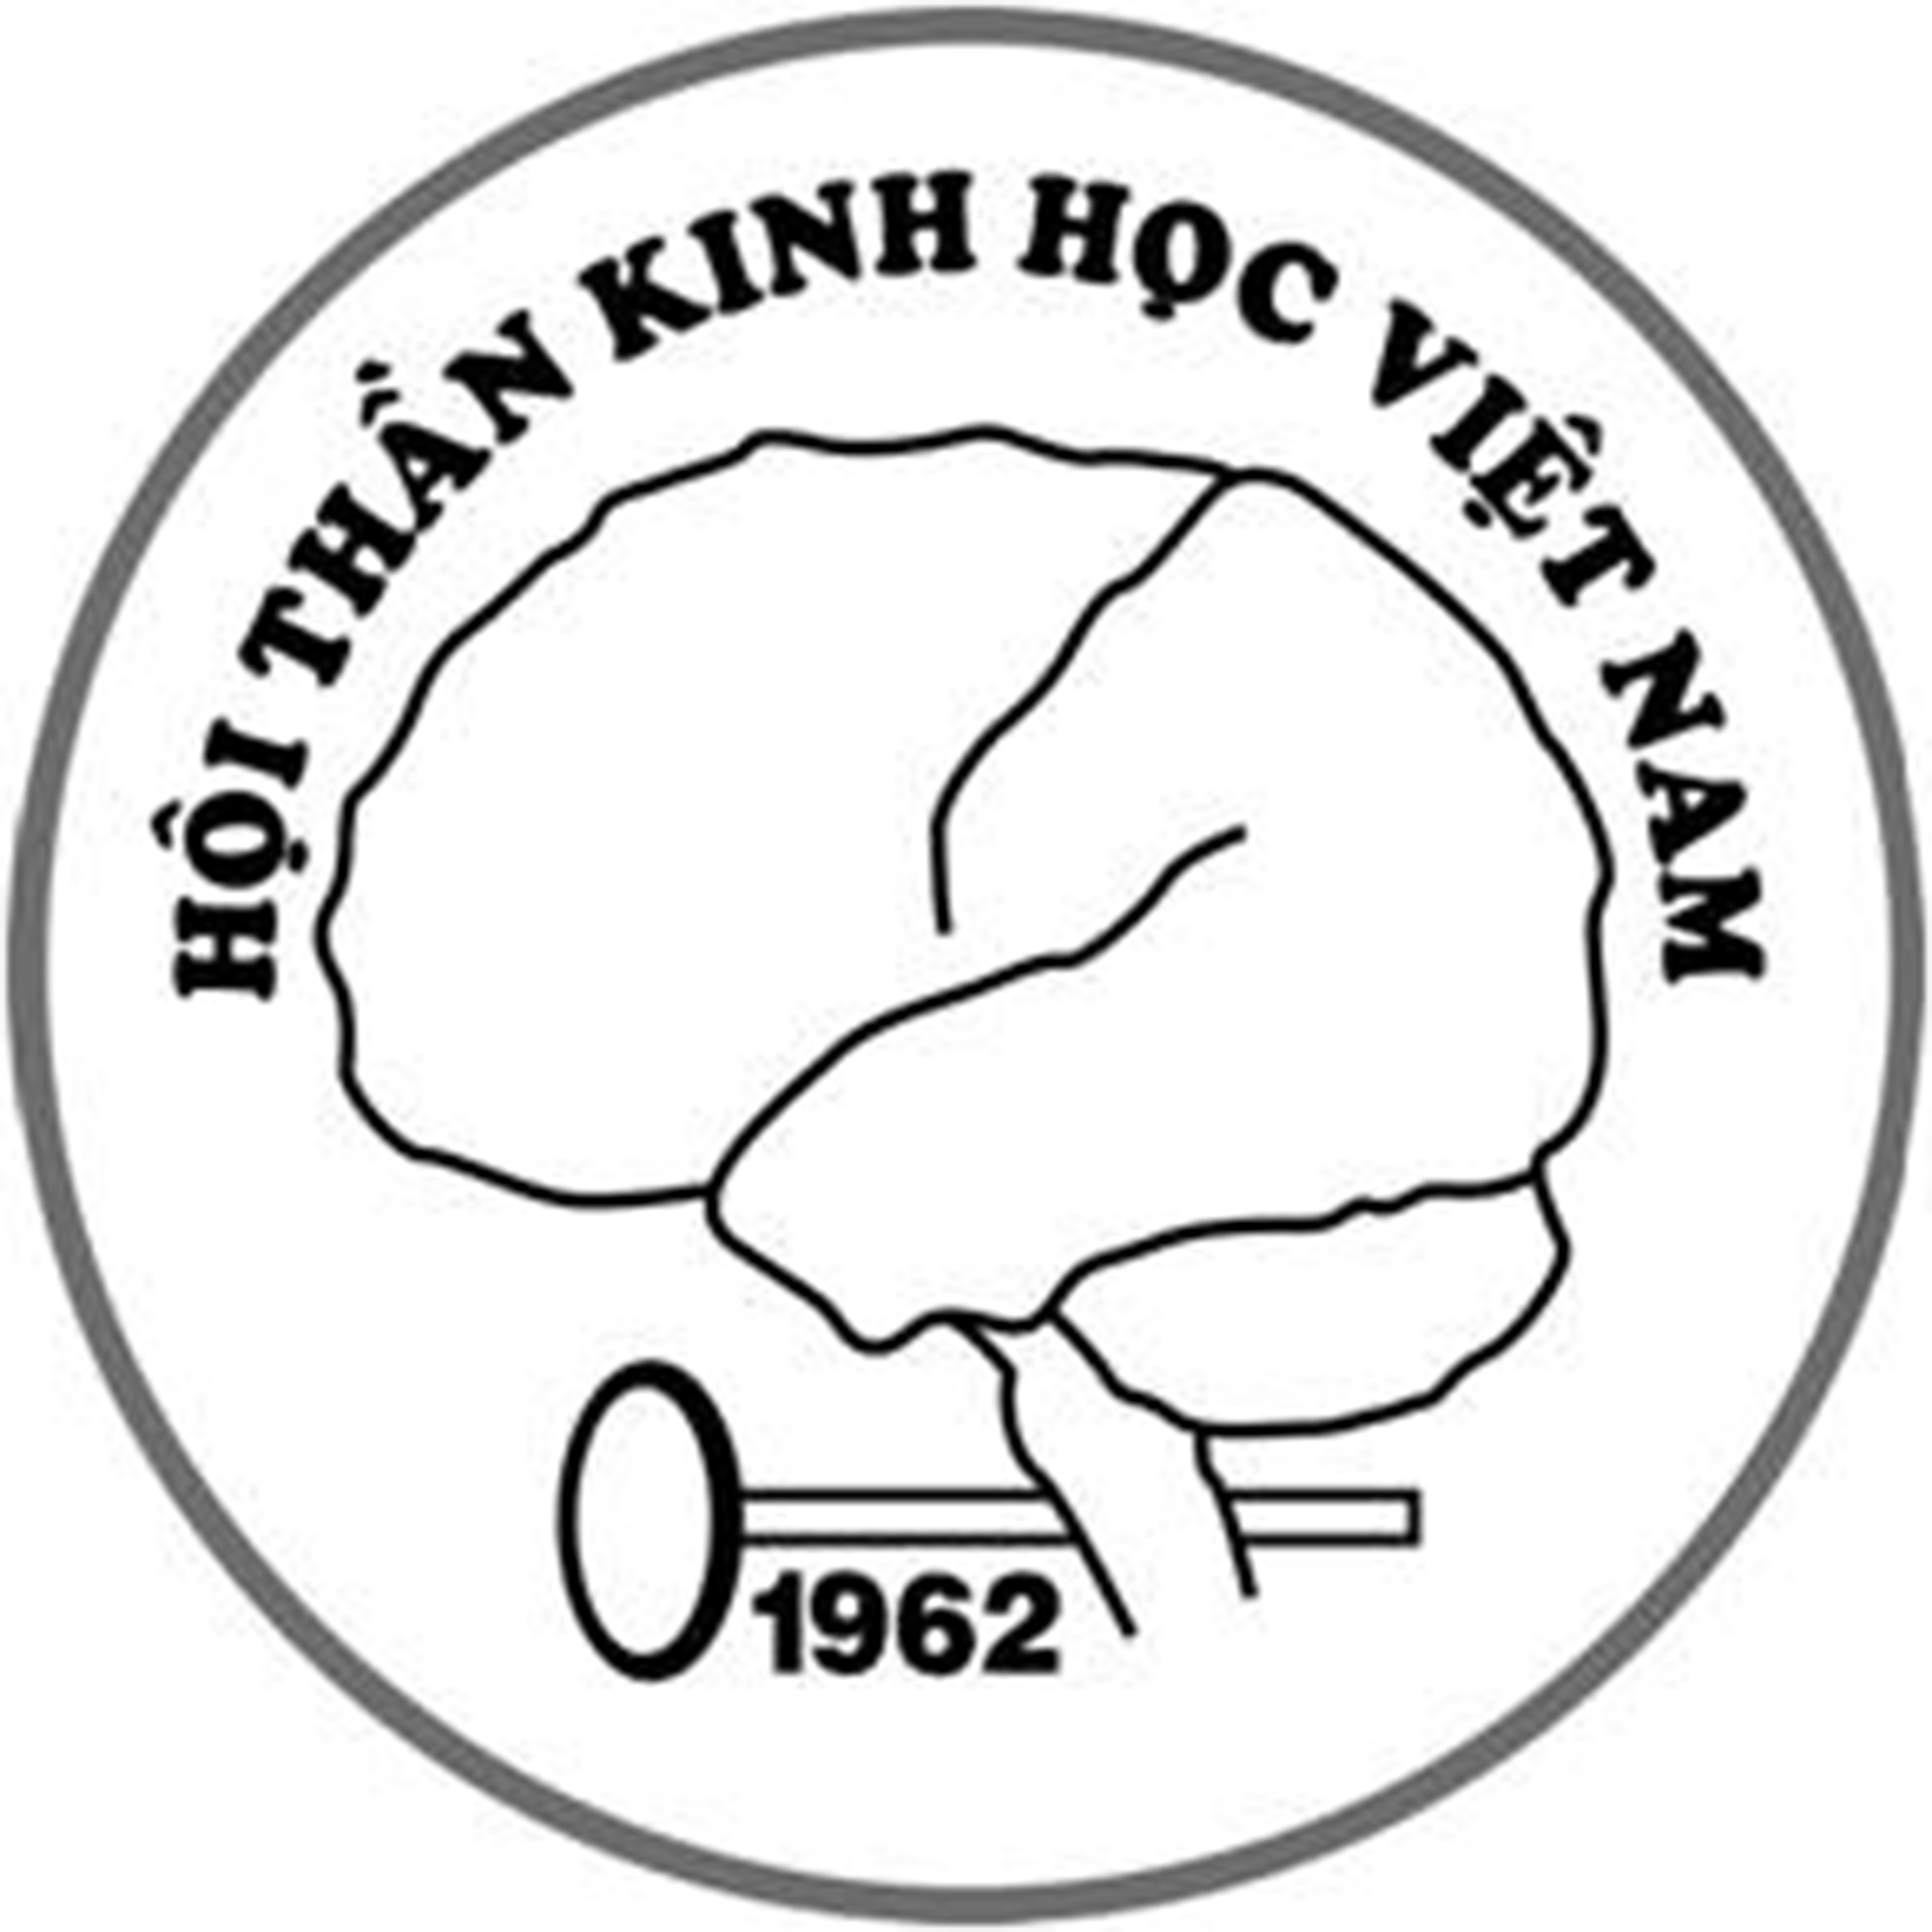 ĐIỂM LẠI HOẠT ĐỘNG CỦA  HỘI THẦN KINH HỌC VIỆT NAM 1998 – 2015